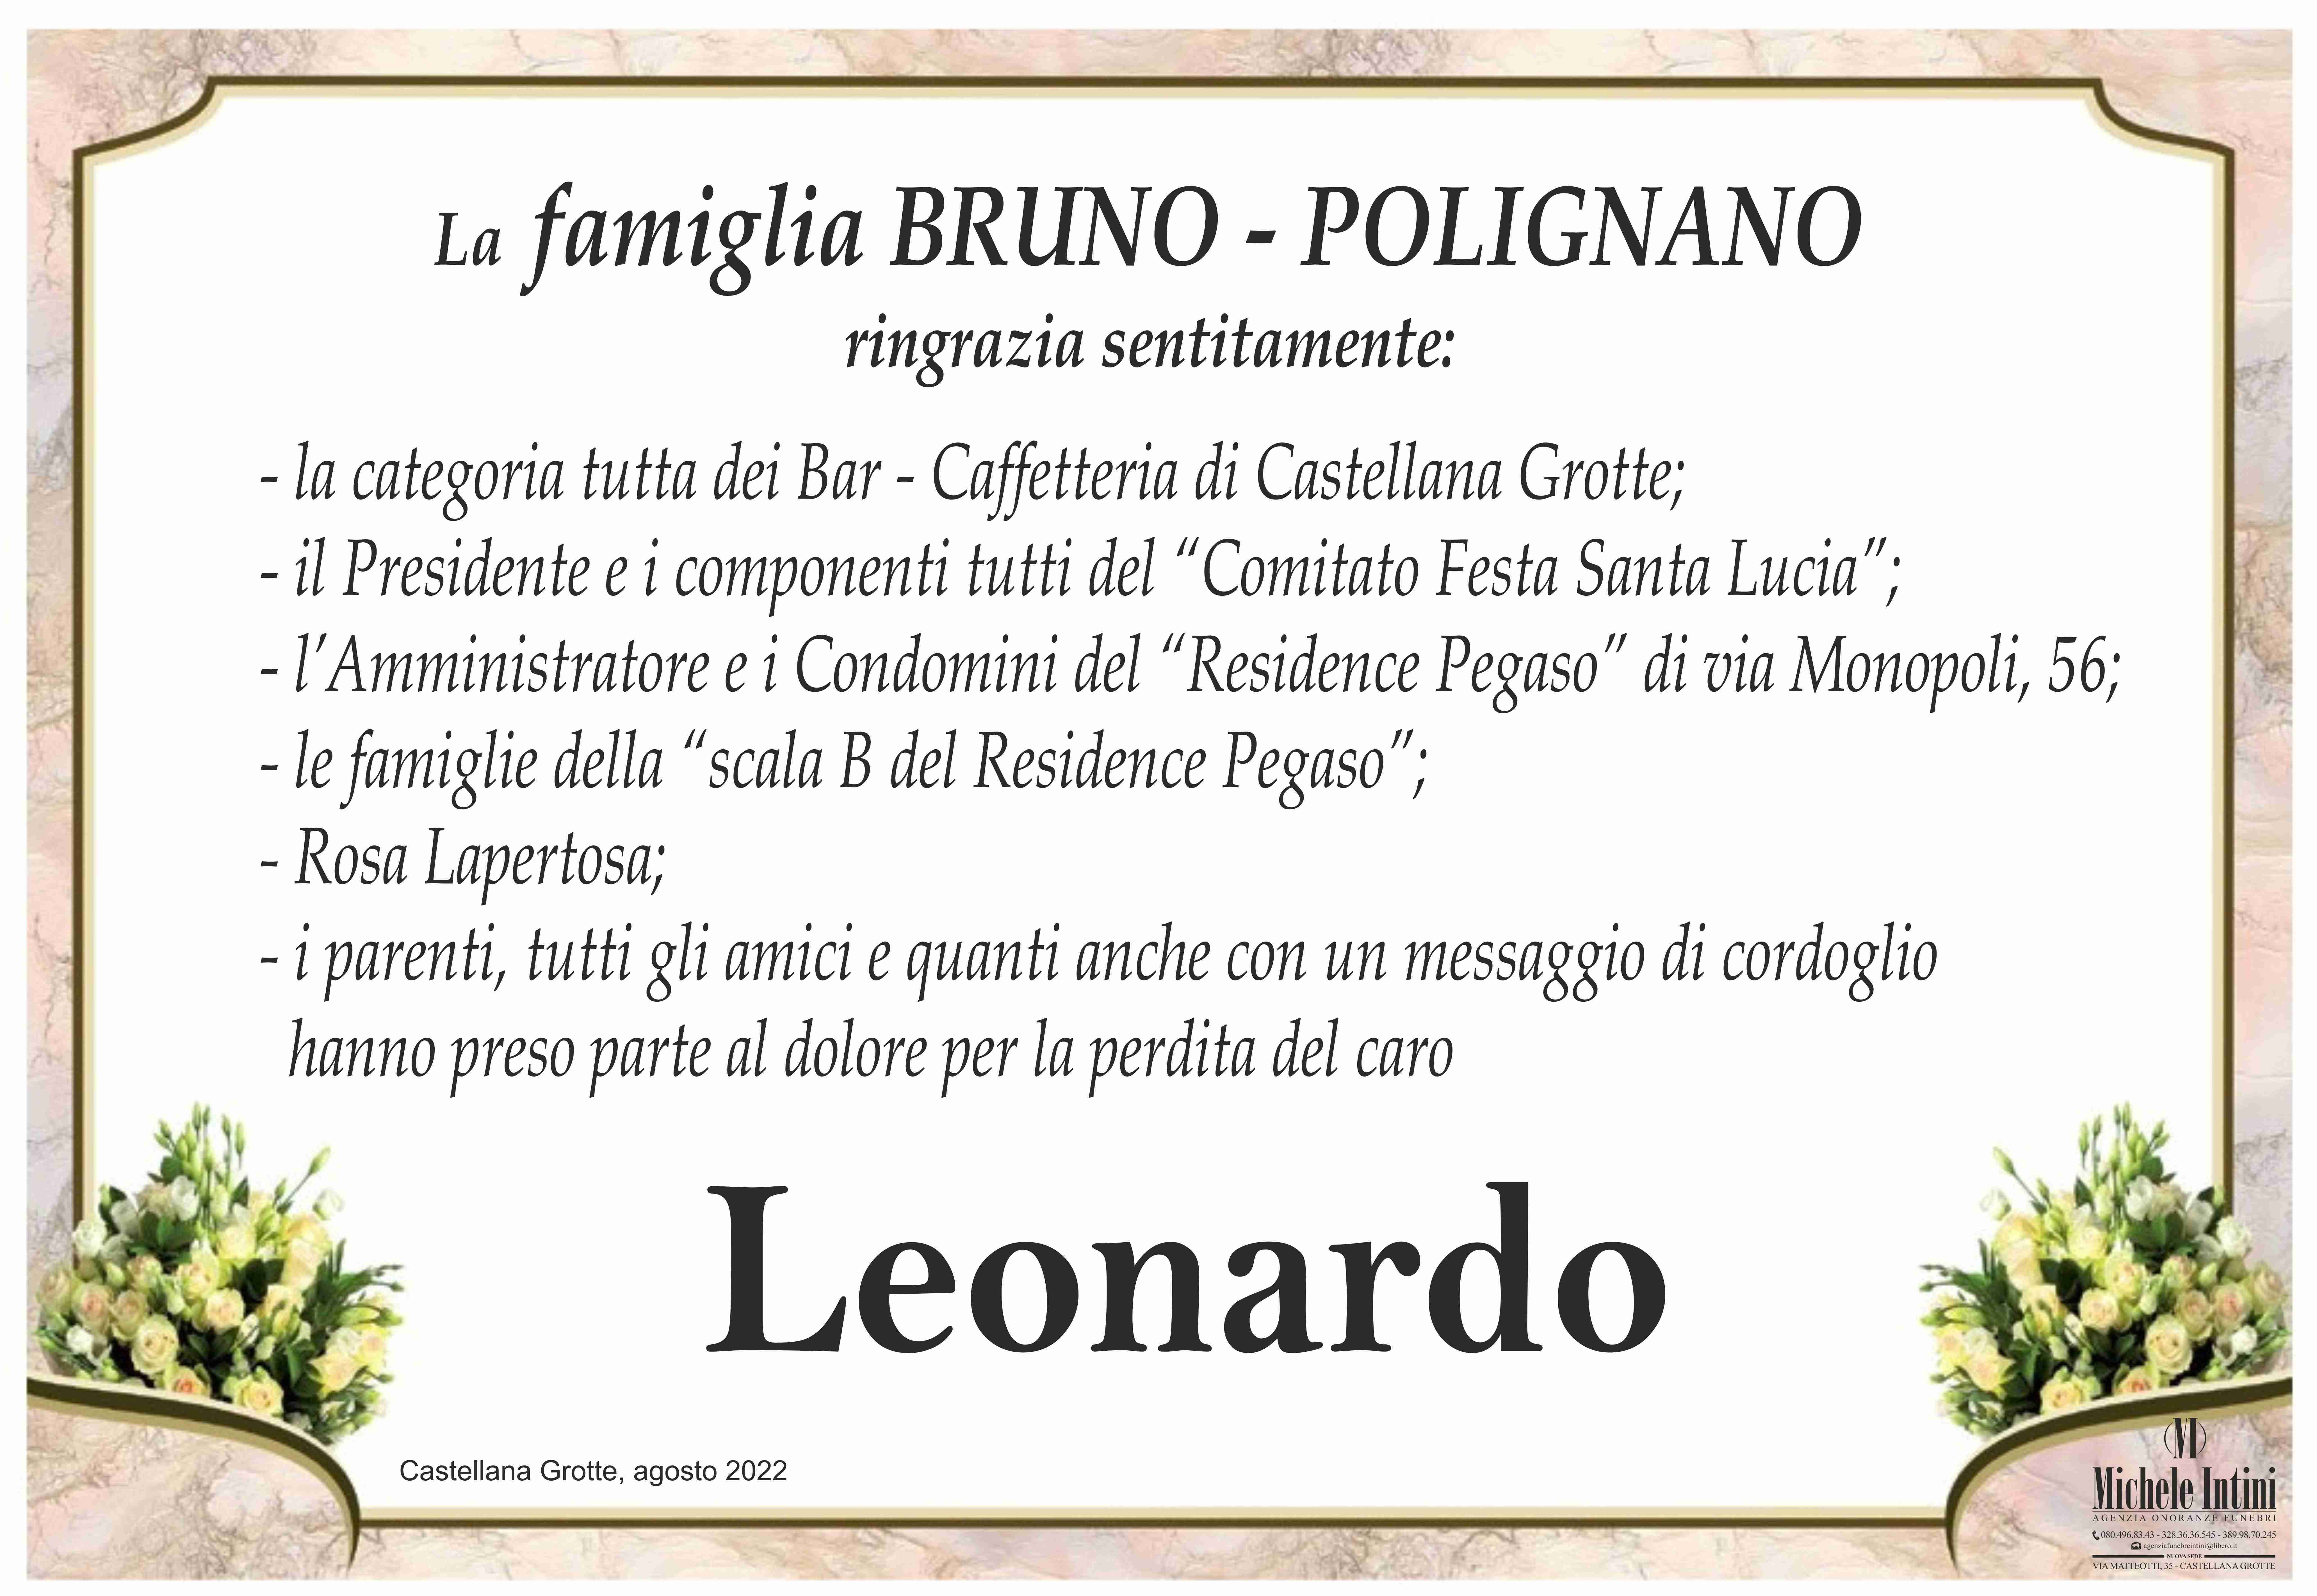 Leonardo Bruno